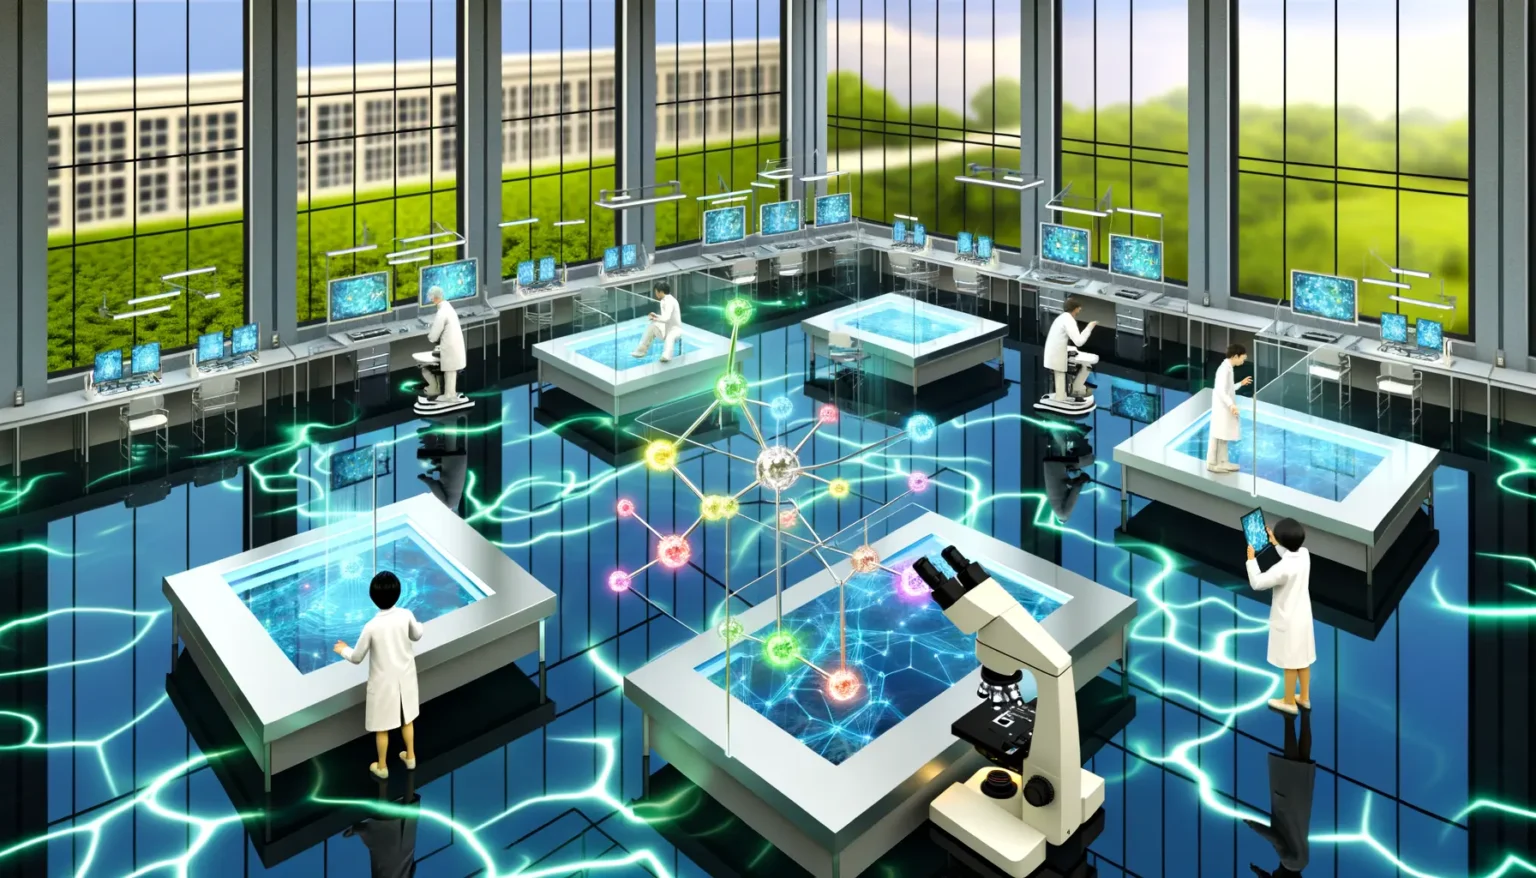 Futuristisches Labor mit Wissenschaftlern in weißen Kitteln, die an fortschrittlichen interaktiven Arbeitsstationen mit transparenten Bildschirmen und holographischen Displays arbeiten. Der Raum ist hell und modern, mit großen Fenstern, die auf eine grüne Landschaft hinausgehen, und einem glänzenden Boden, der mit leuchtenden digitalen Linien durchzogen ist.